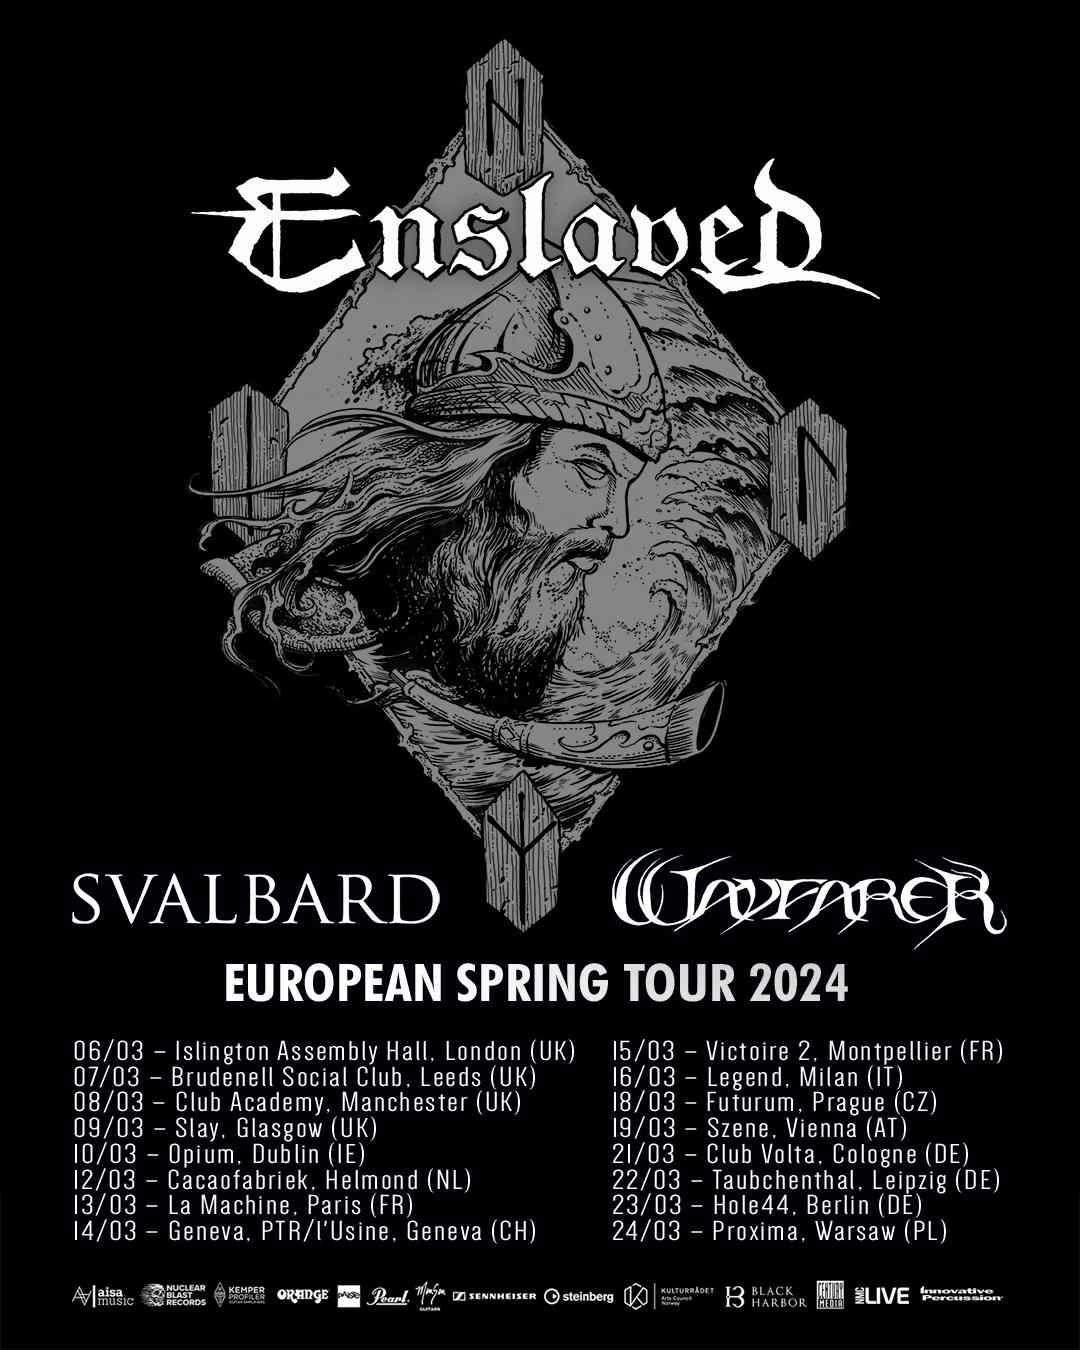 European spring tour 2024